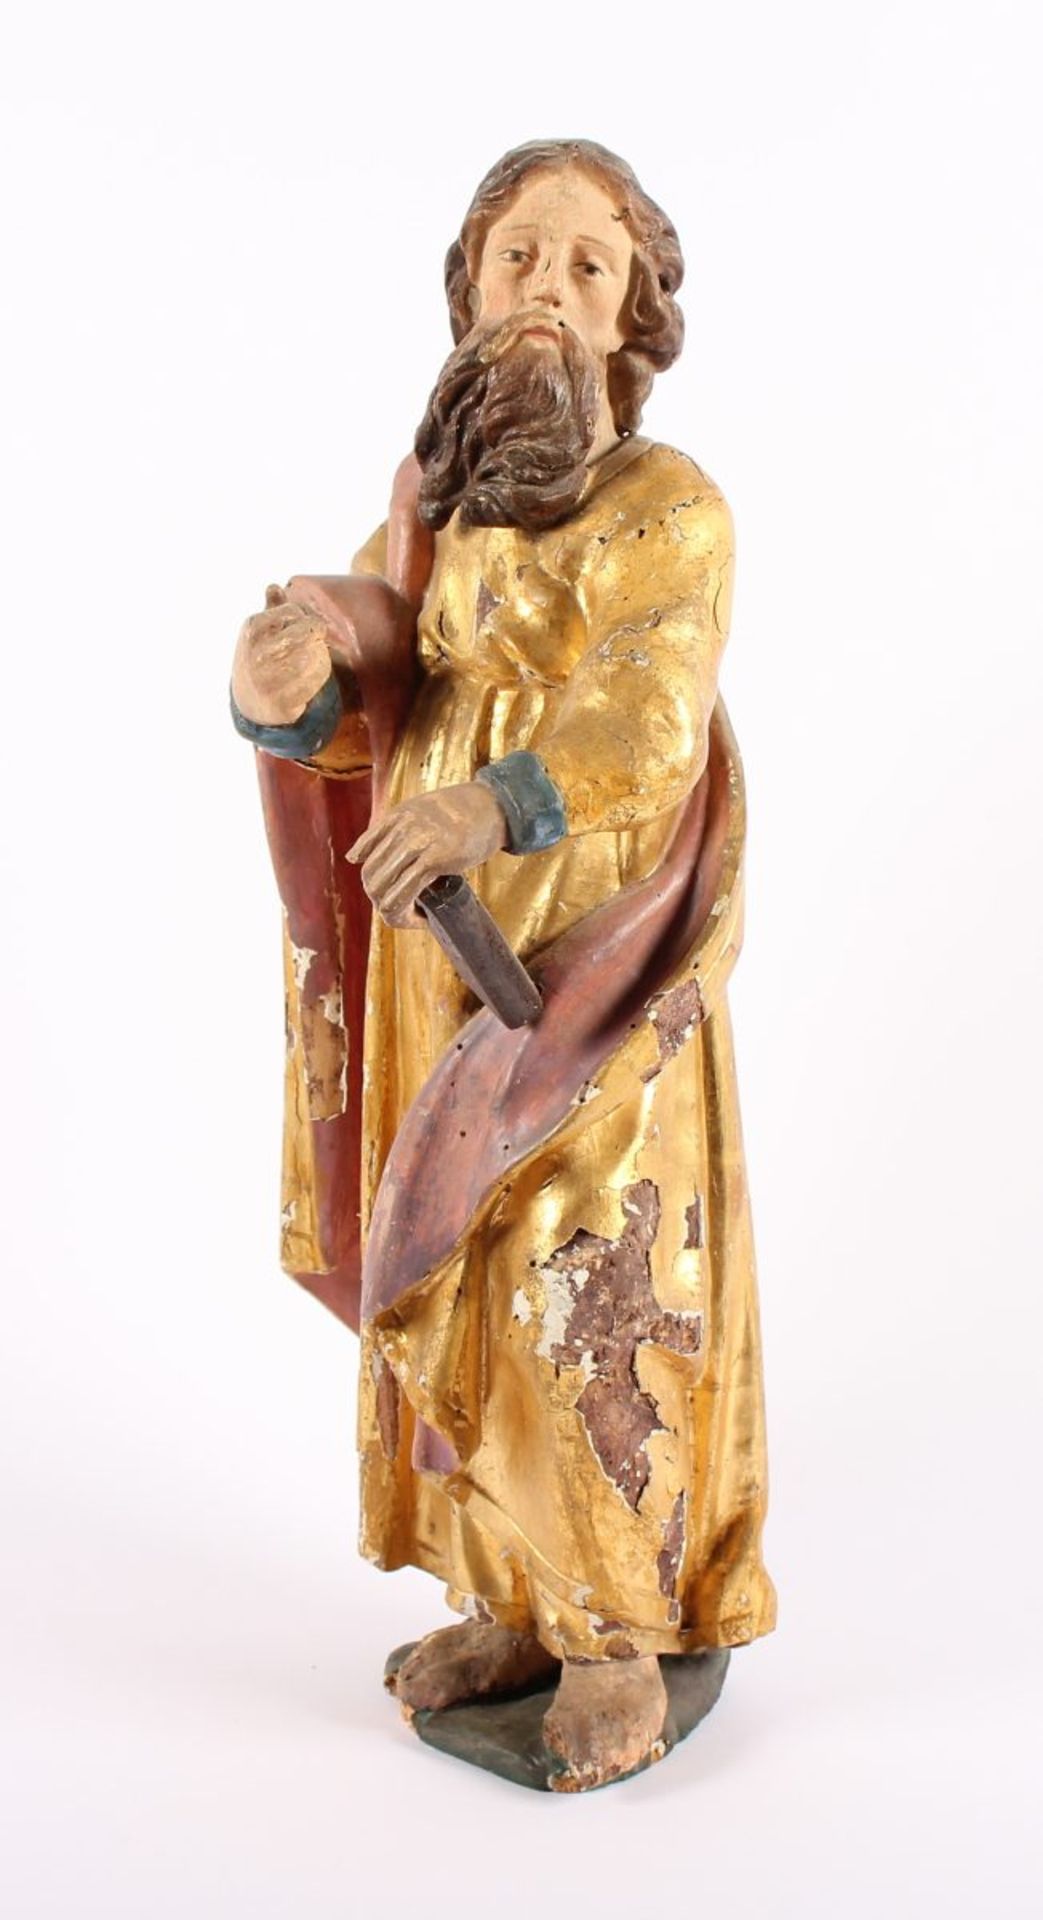 HEILIGER PAULUS UND KLEINER ENGEL, Holz, geschnitzt, farbig gefasst, vergoldet, H 48 und H 23, - Bild 2 aus 6